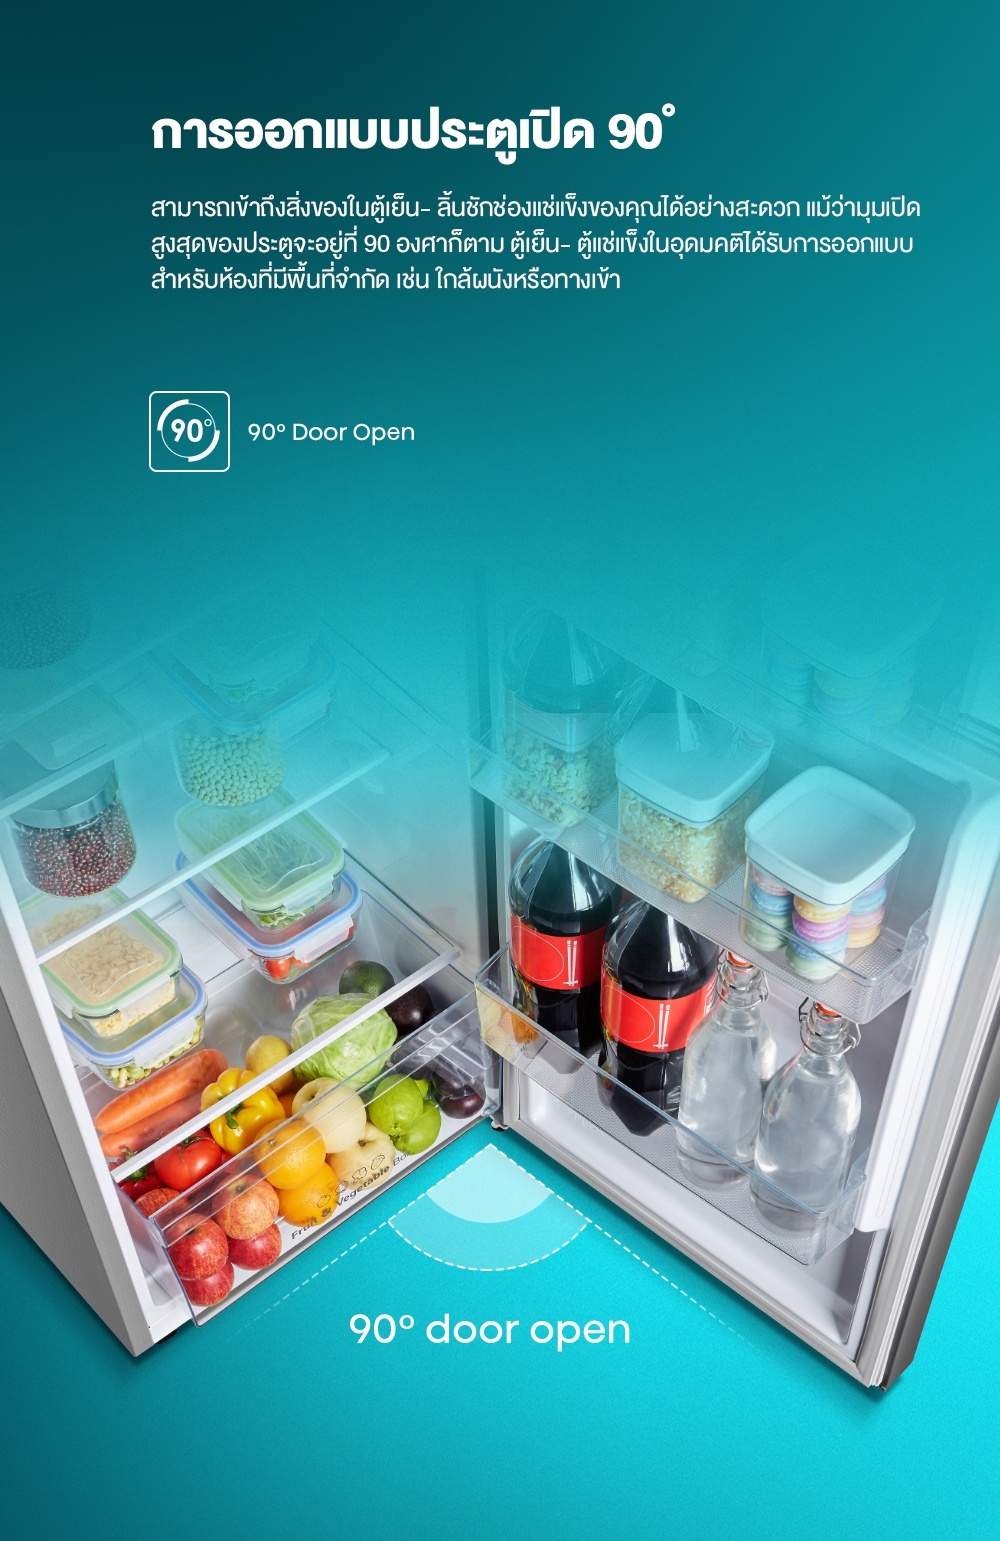 ข้อมูลเพิ่มเติมของ Hisense ตู้เย็น 2 ประตู : 7.5Q / 212 ลิตร รุ่น RT266N4TGN